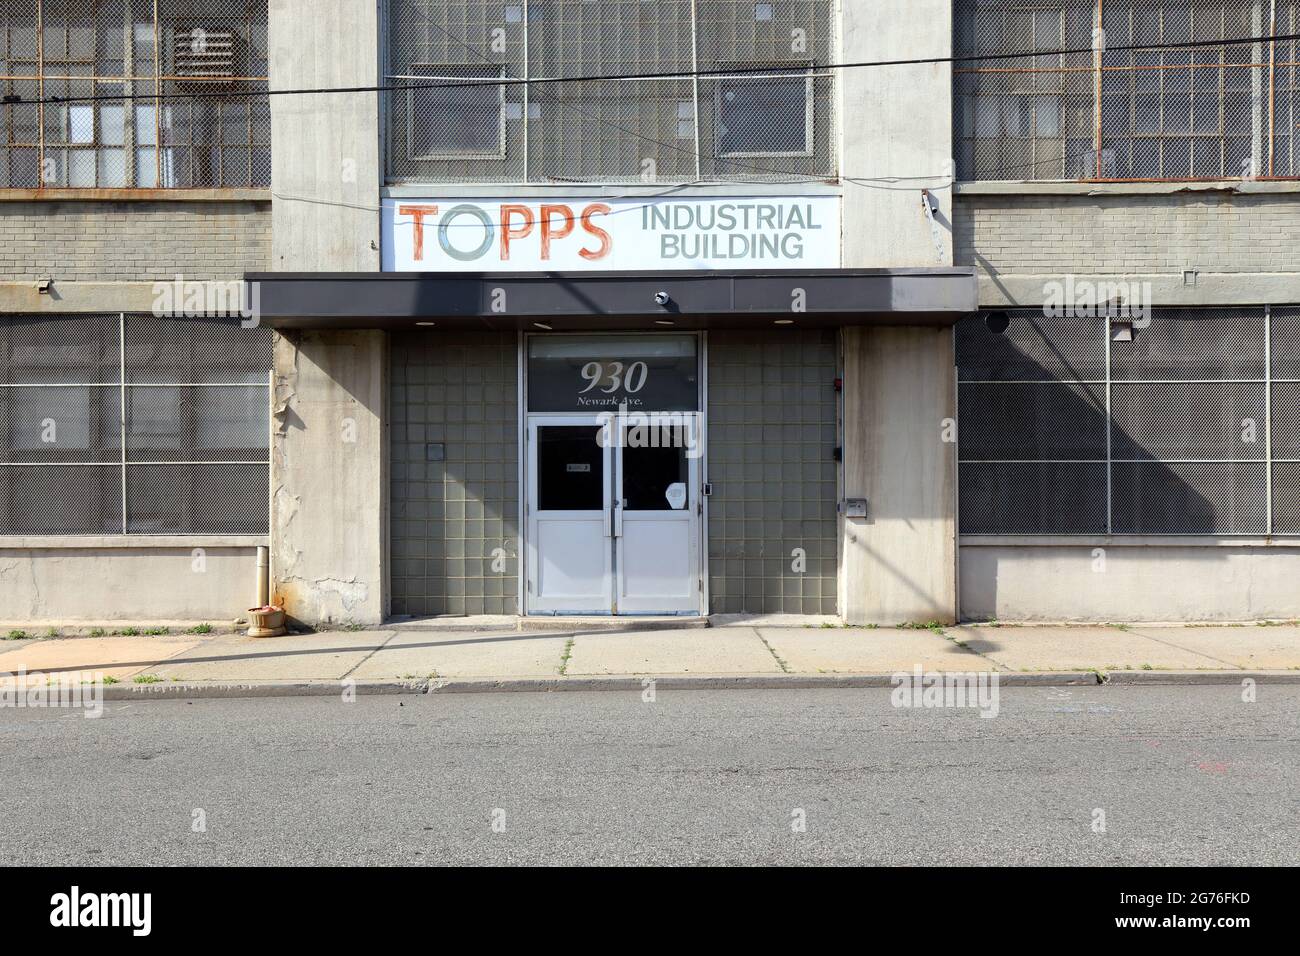 Edificio Industrial Topps, 930 Newark Ave, Jersey City, NJ. Escaparate exterior de un edificio industrial y comercial de uso mixto que incluye una galería Foto de stock